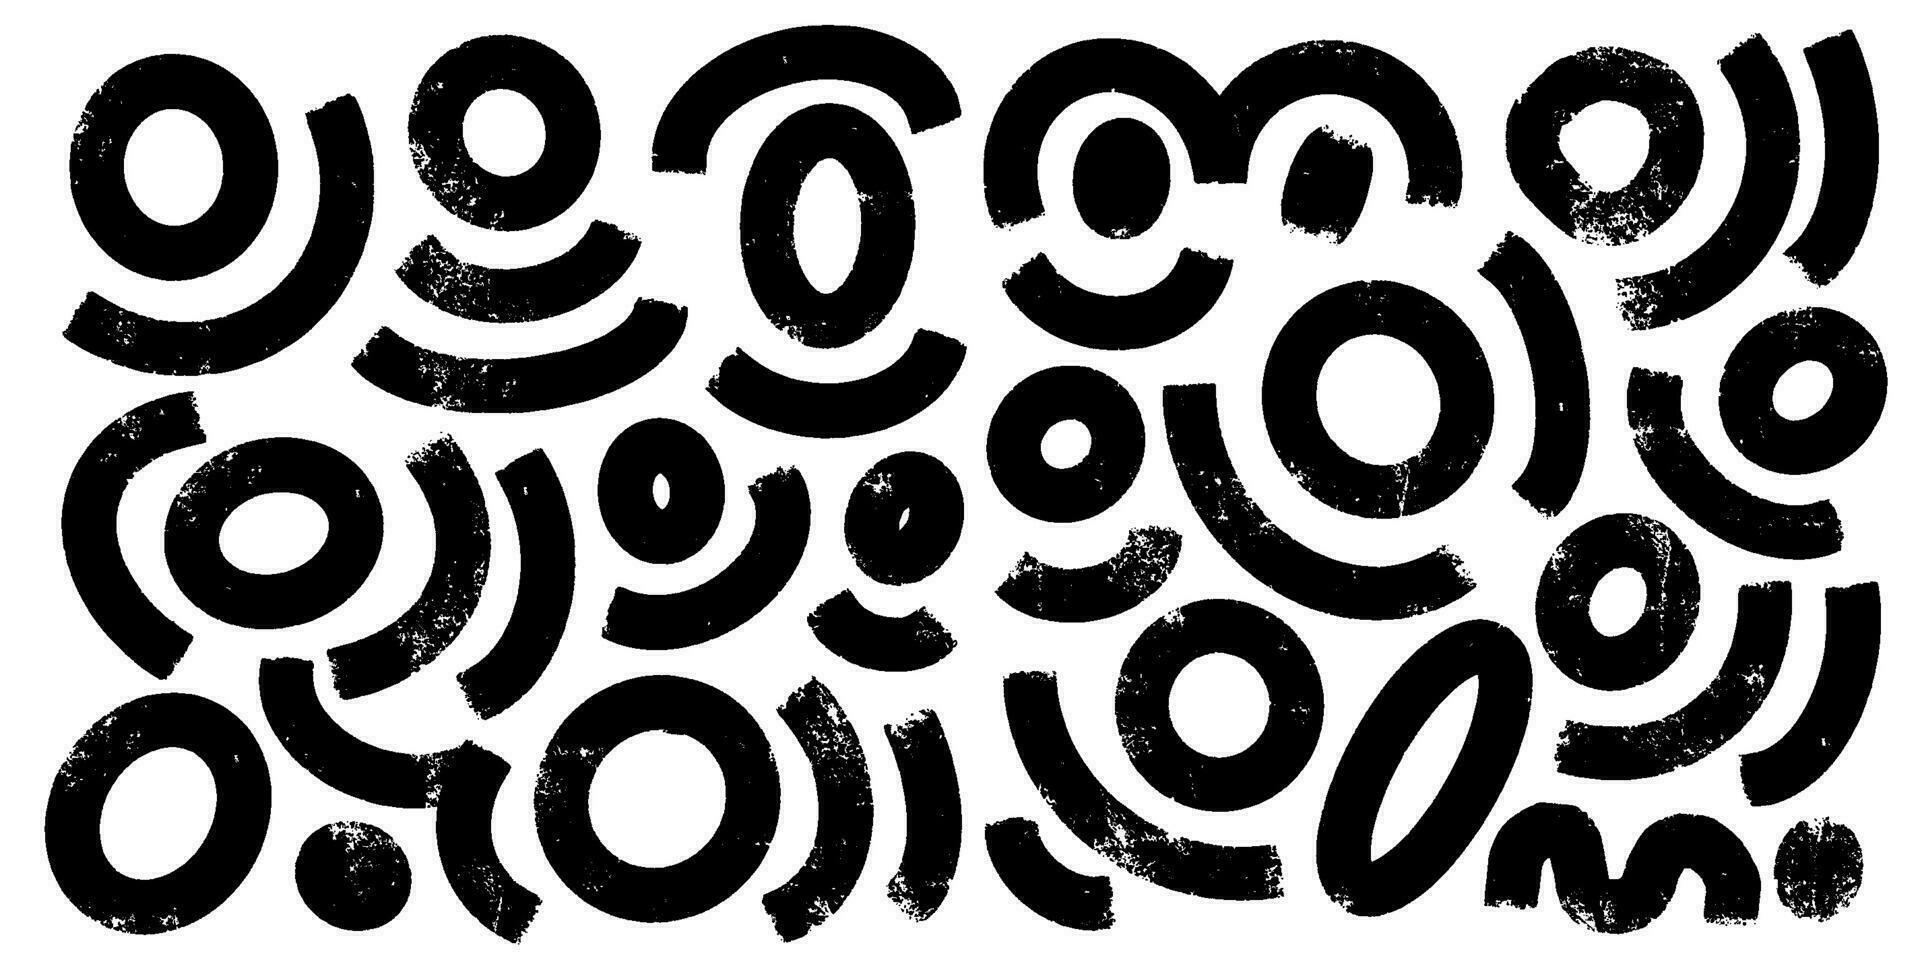 colección de negro garabato negrita líneas y cepillo dibujado garabatos mano dibujado abctract orgánico formas infantil Escribiendo líneas, orgánico irregular circular vector trazos resumen elementos.